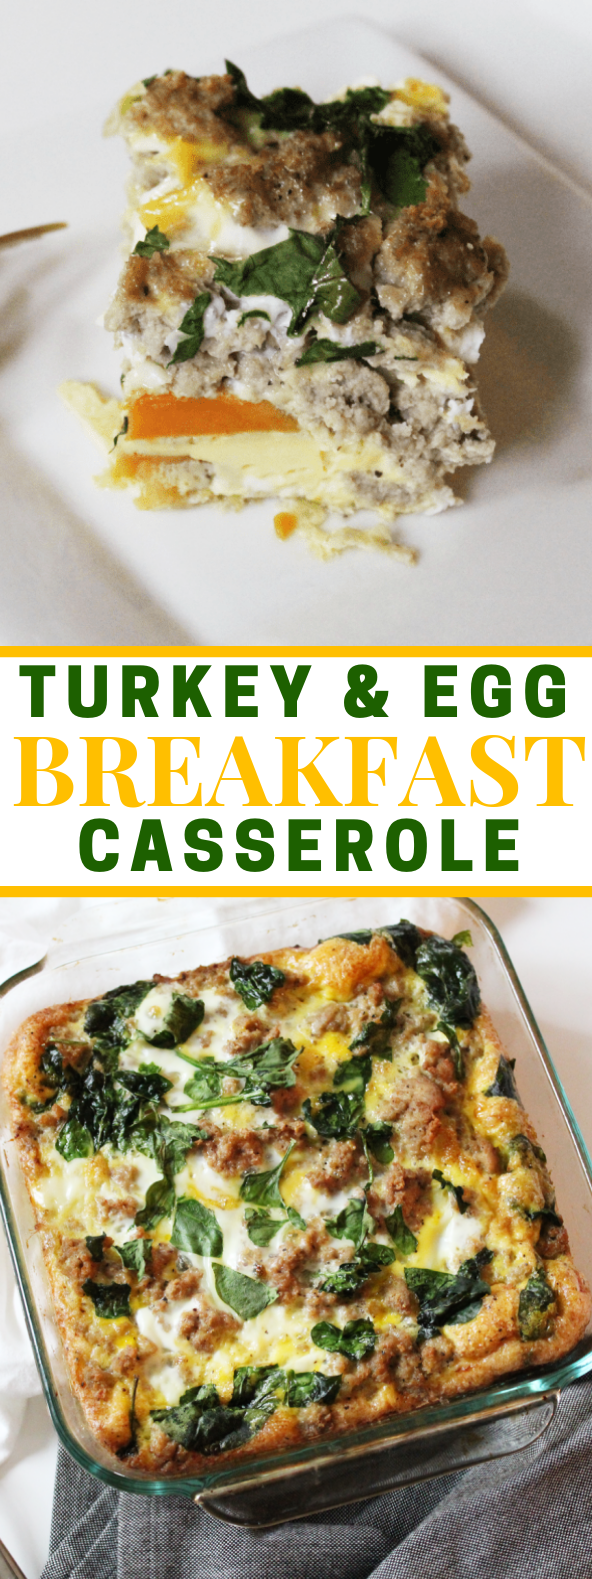 Turkey & Egg Breakfast Casserole #paleo #breakfast